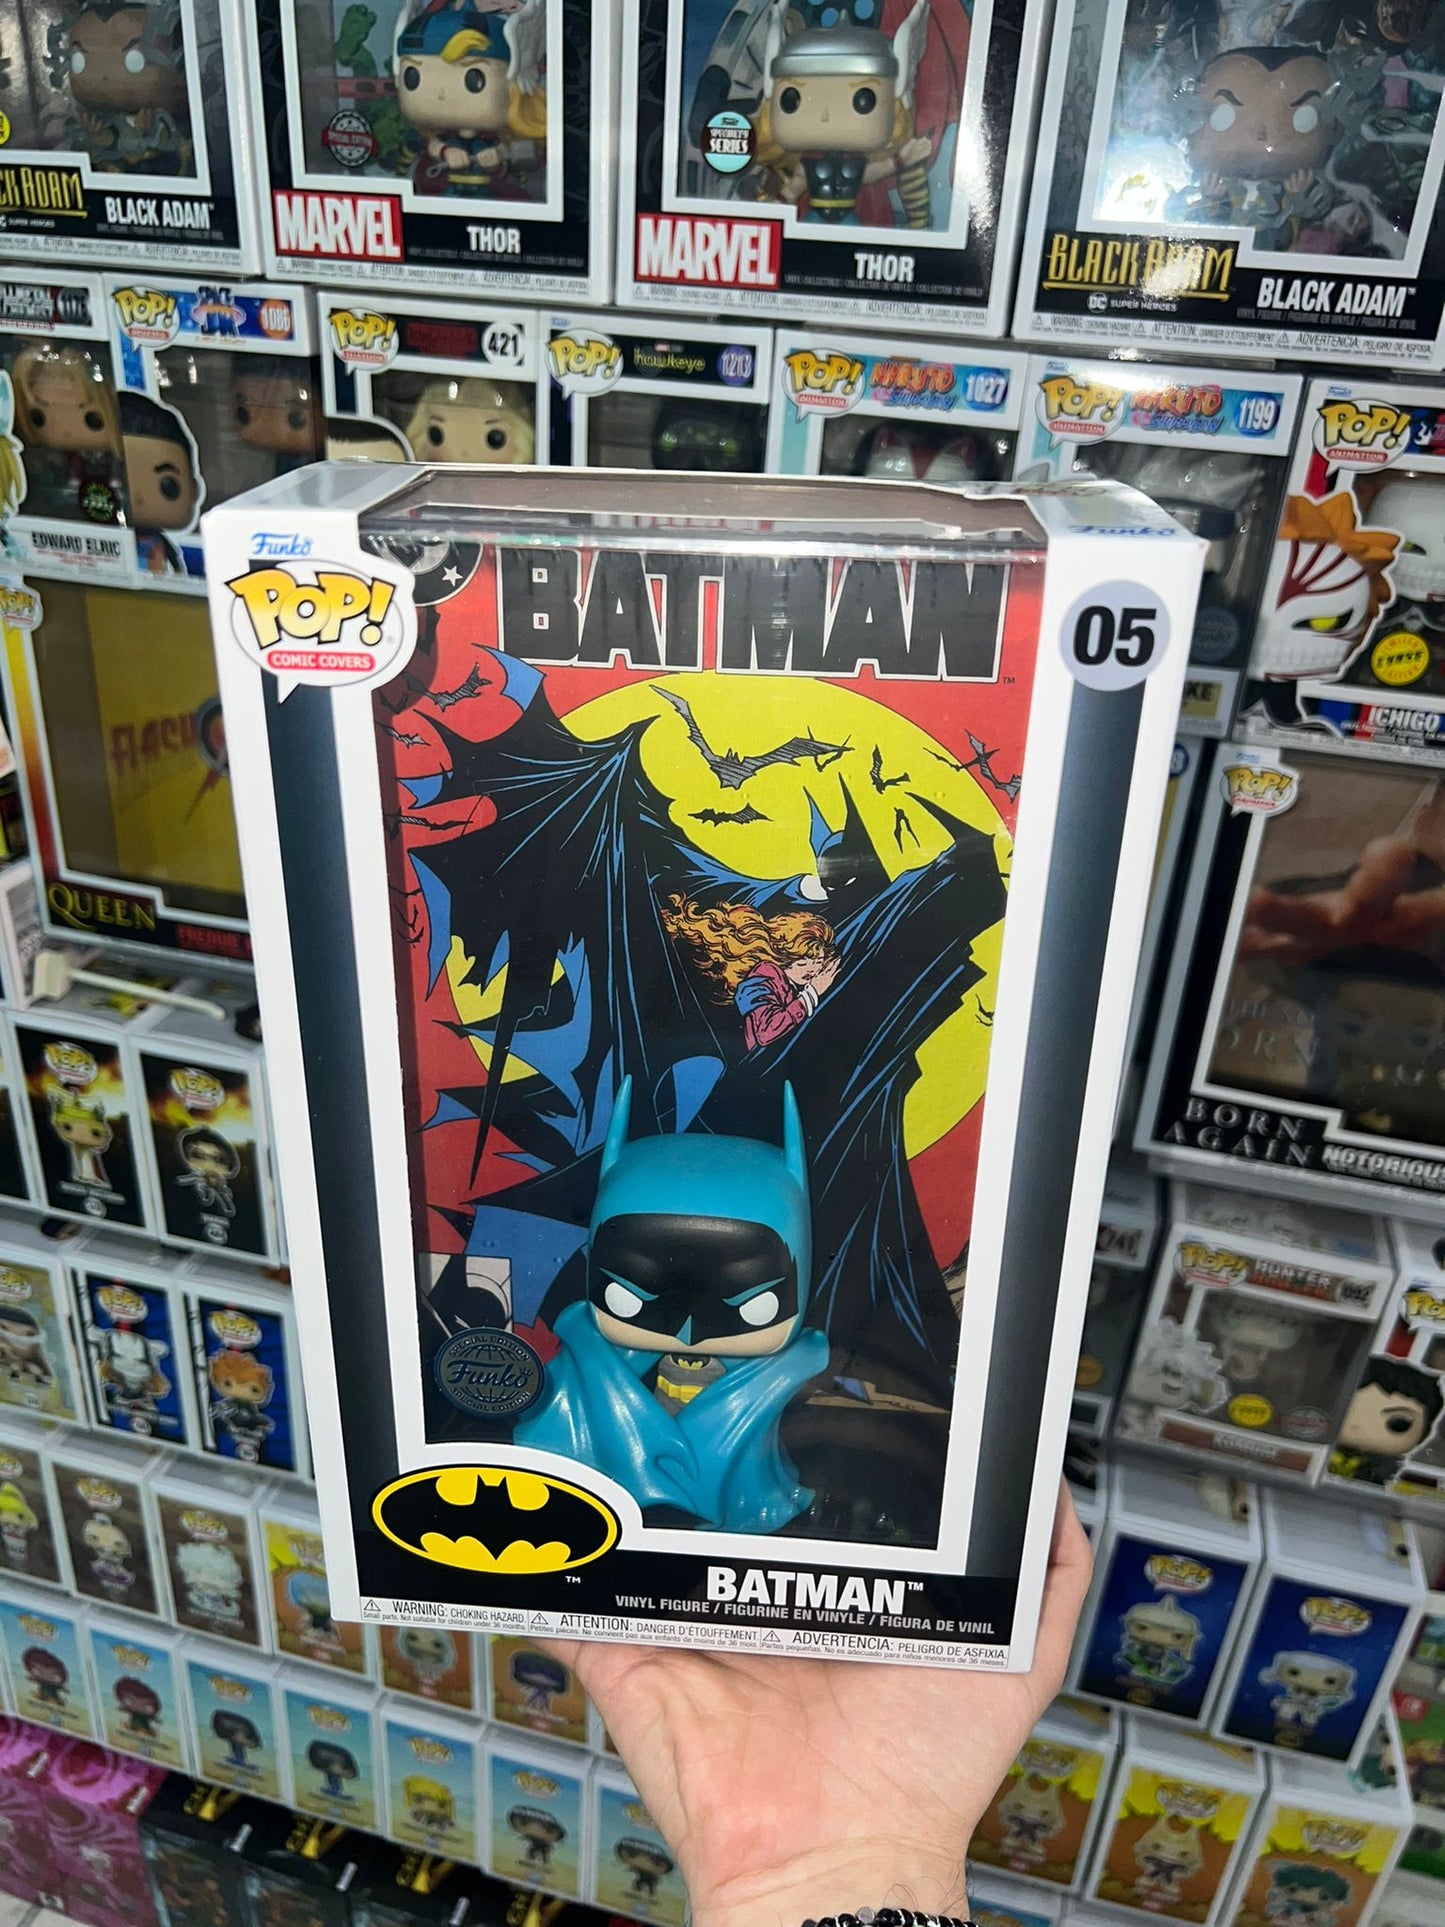 Dc Comic Cover - Batman (05) Special